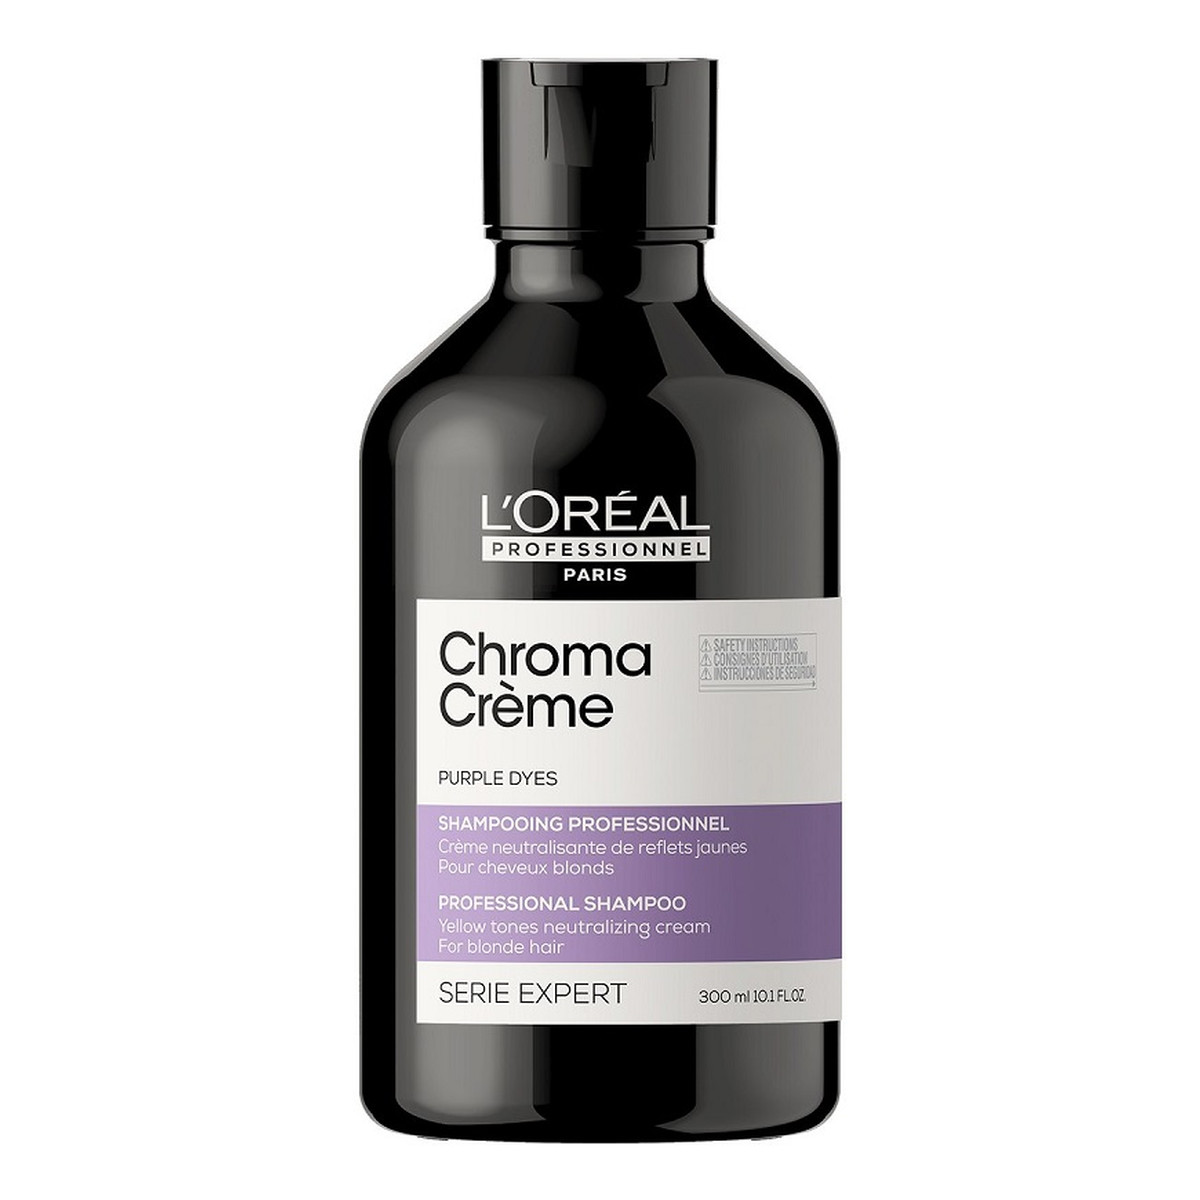 L`oreal Serie Expert Chroma Creme Purple Shampoo kremowy szampon do neutralizacji żółtych tonów na włosach blond 300ml